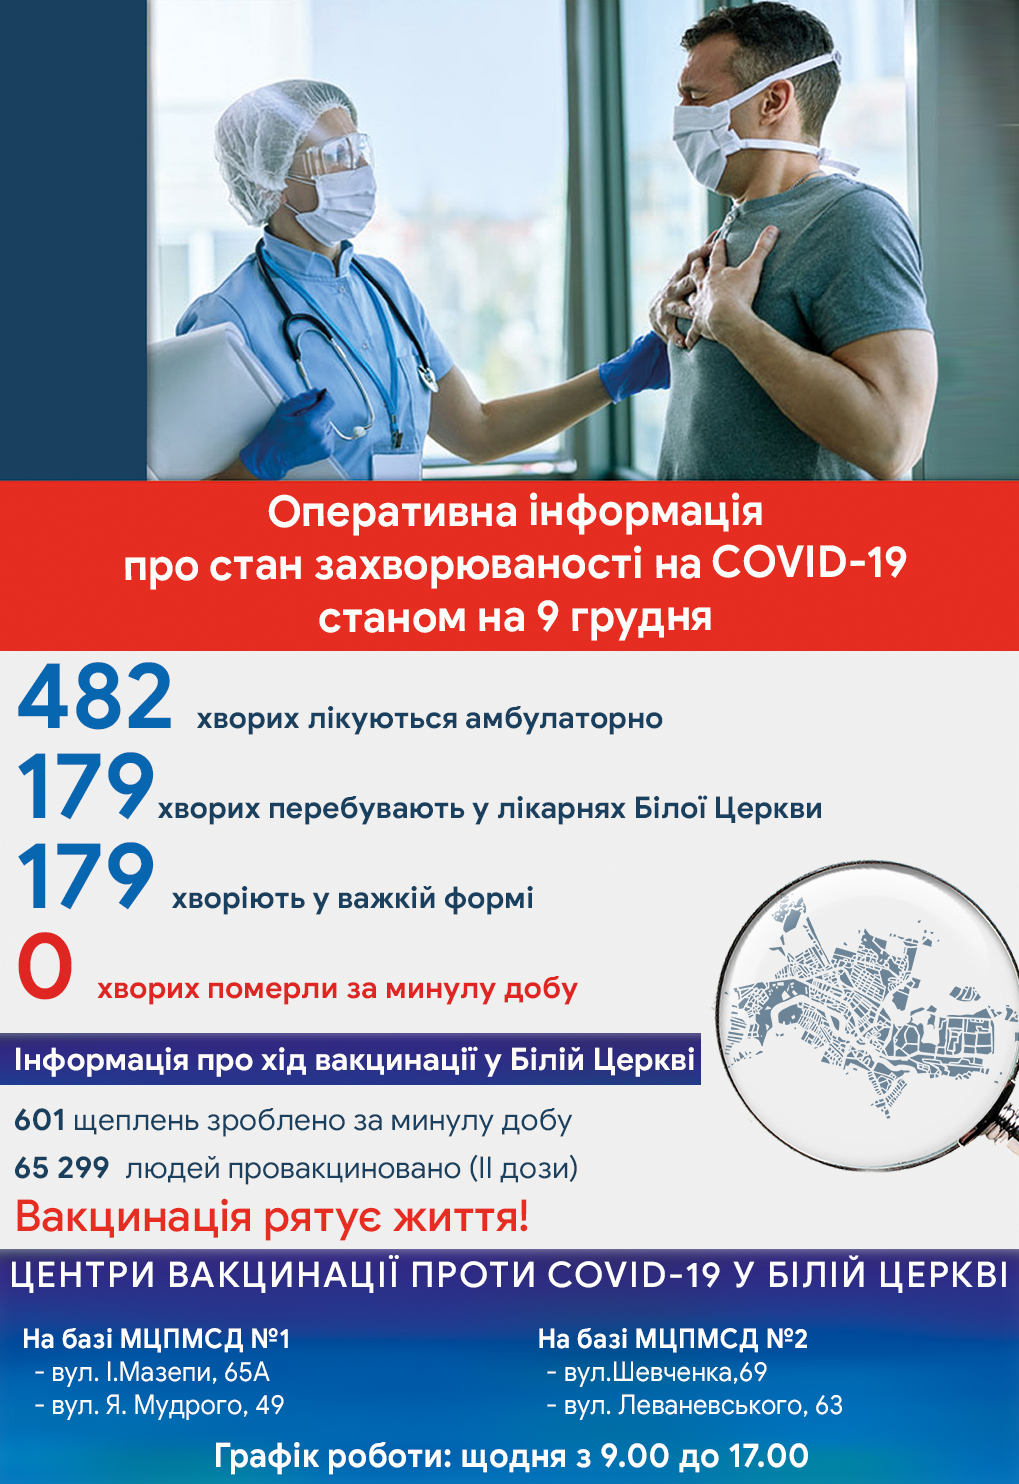 Оперативна інформація про стан захворюваності на COVID-19 станом на 09 грудня